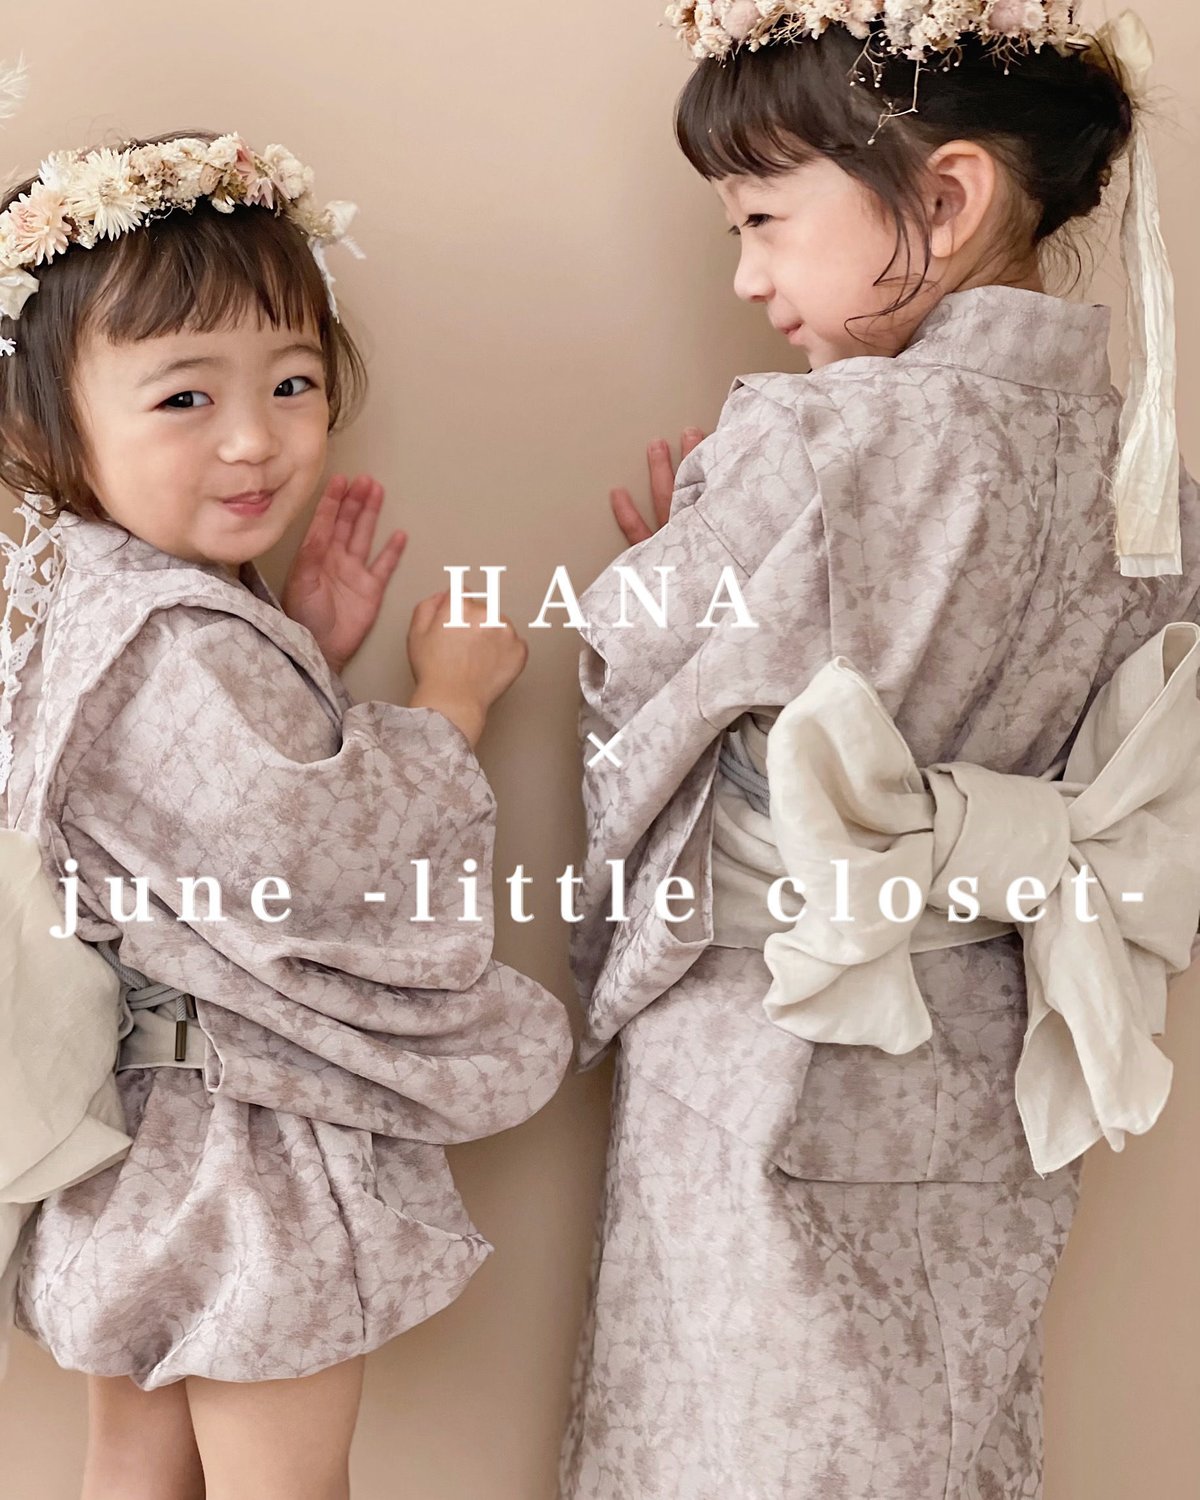 キッズ浴衣 june little closet × hana Sサイズ